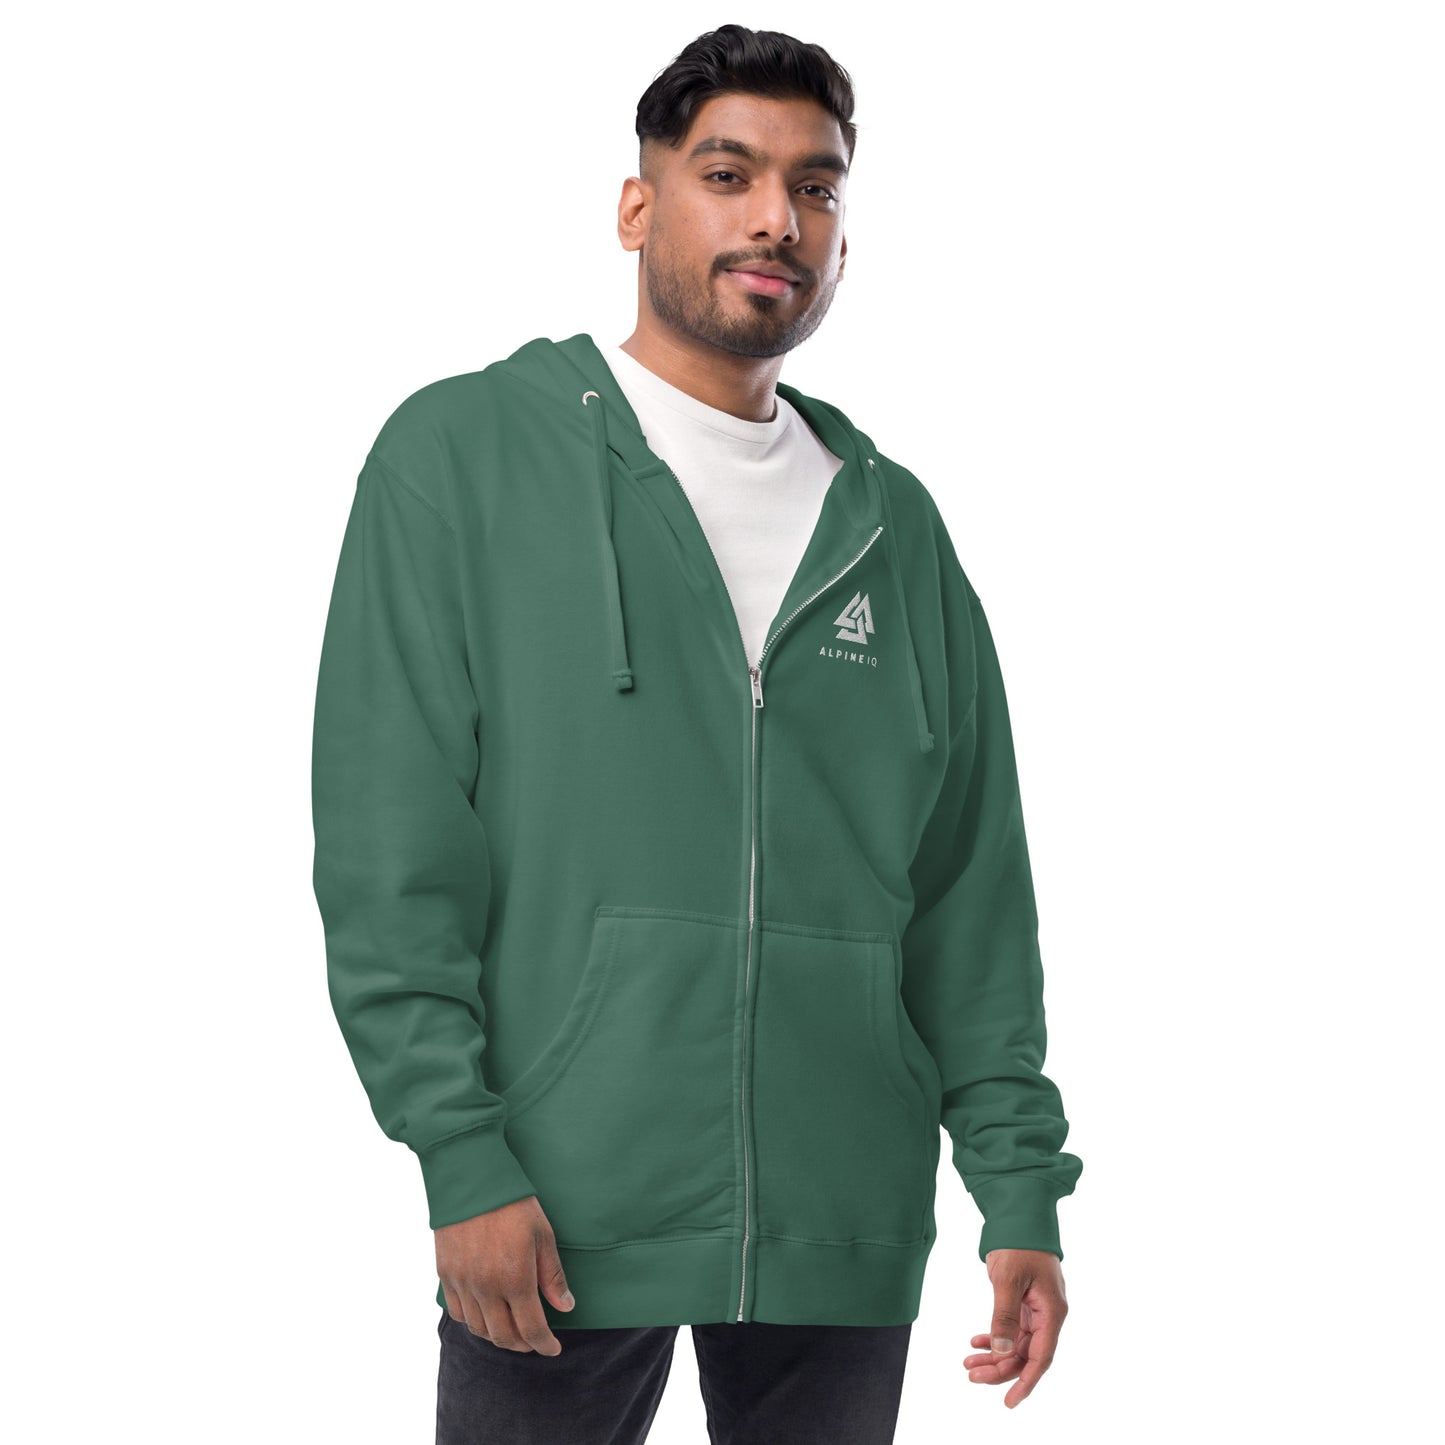 Alpine IQ fleece zip up hoodie - Alpine Green